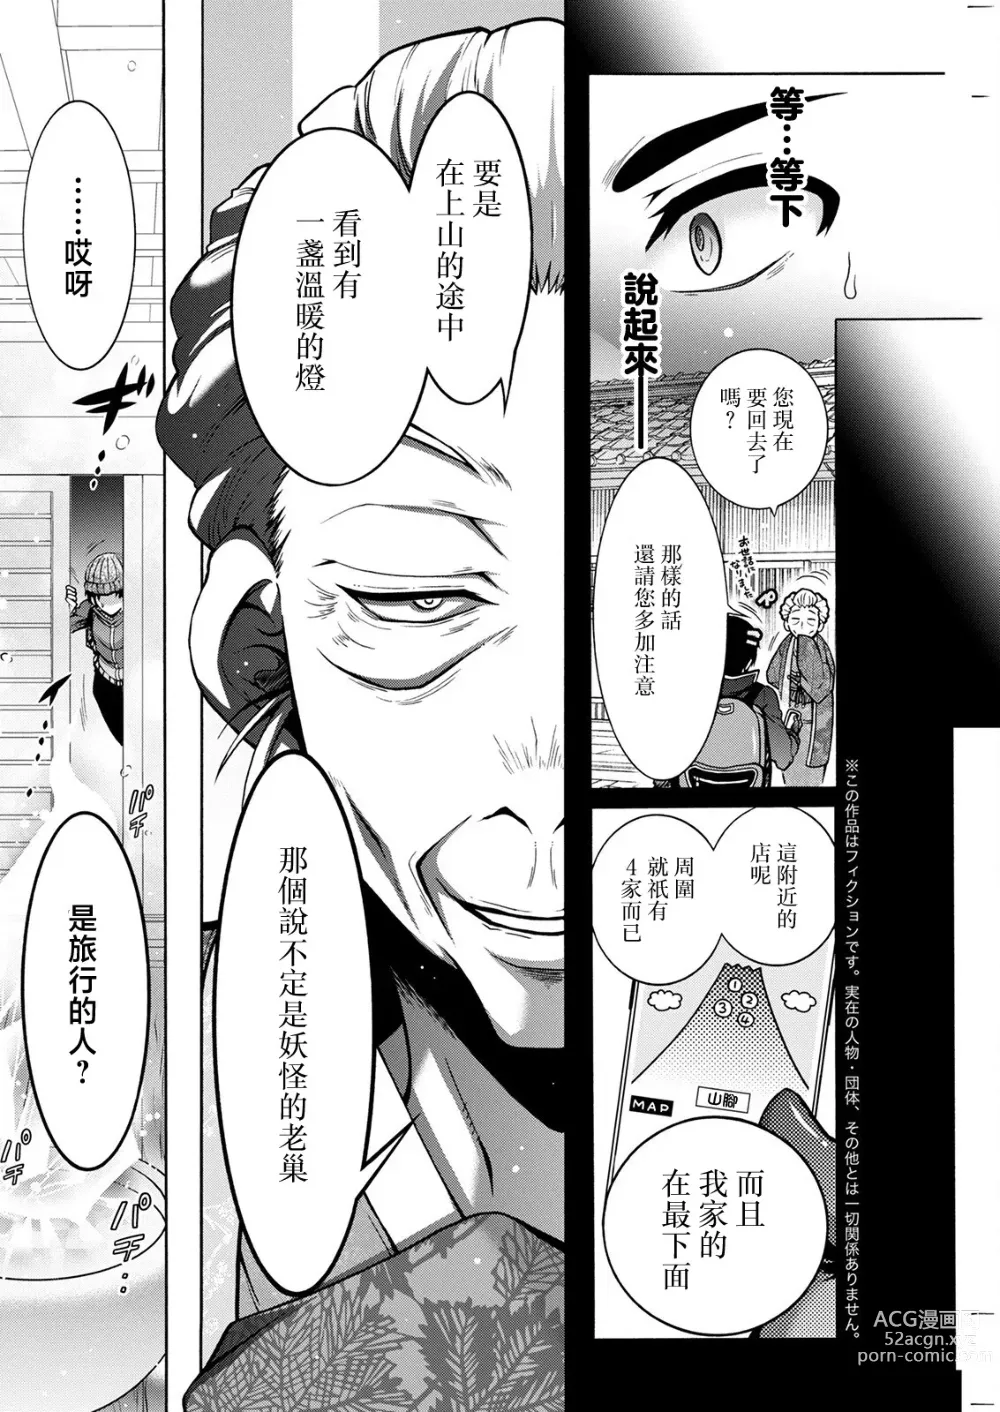 Page 2 of manga Youkai Echichi Ch. 4